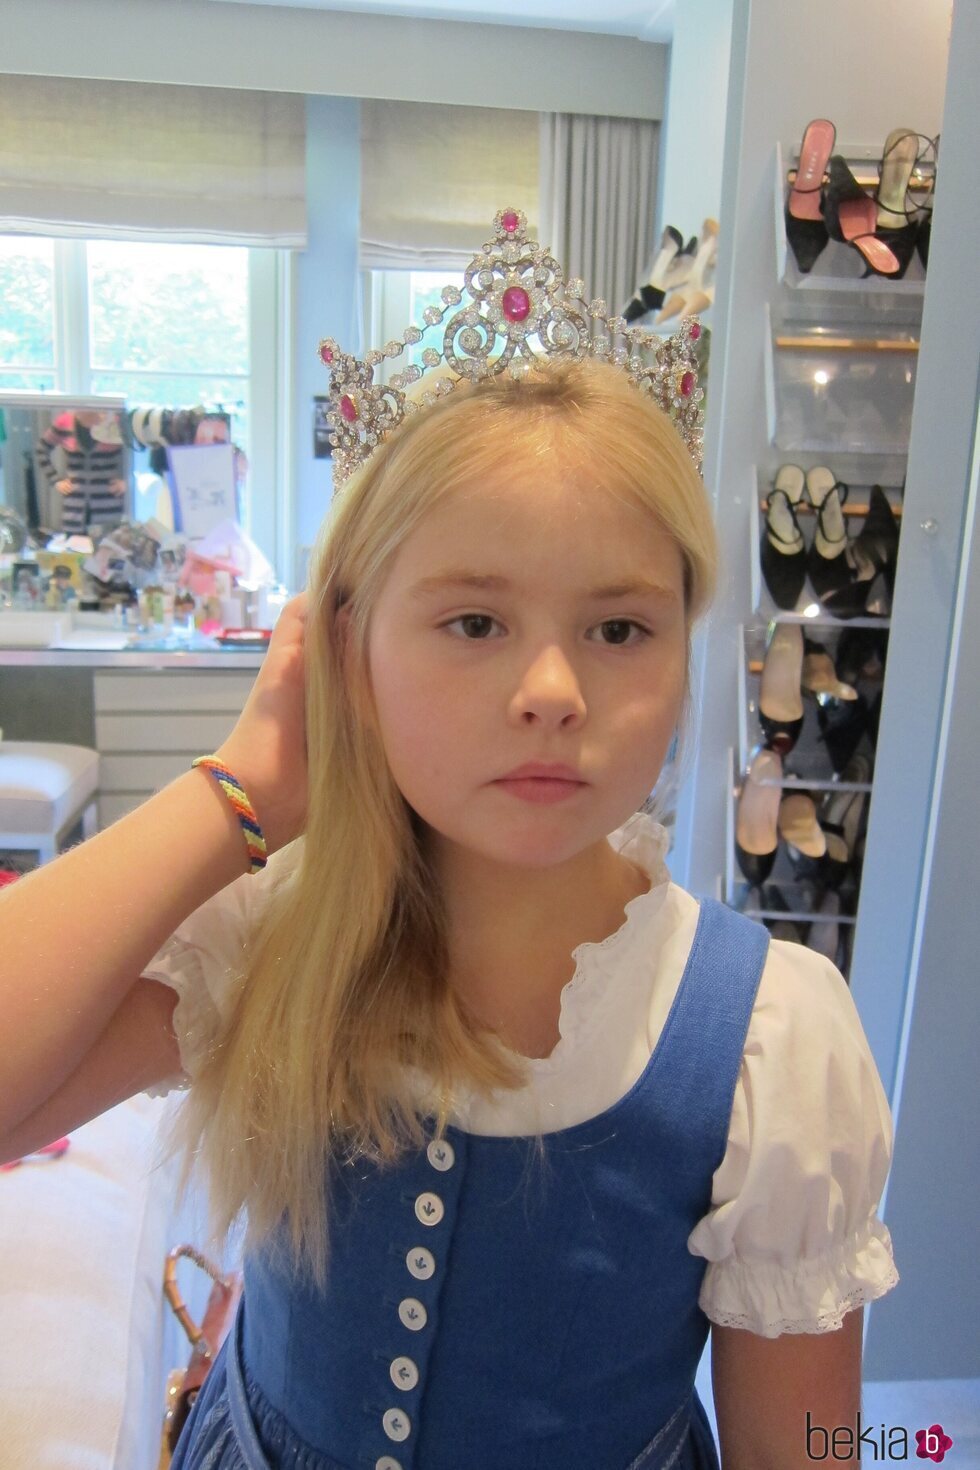 Amalia de Holanda con la tiara Mellerio cuando era pequeña